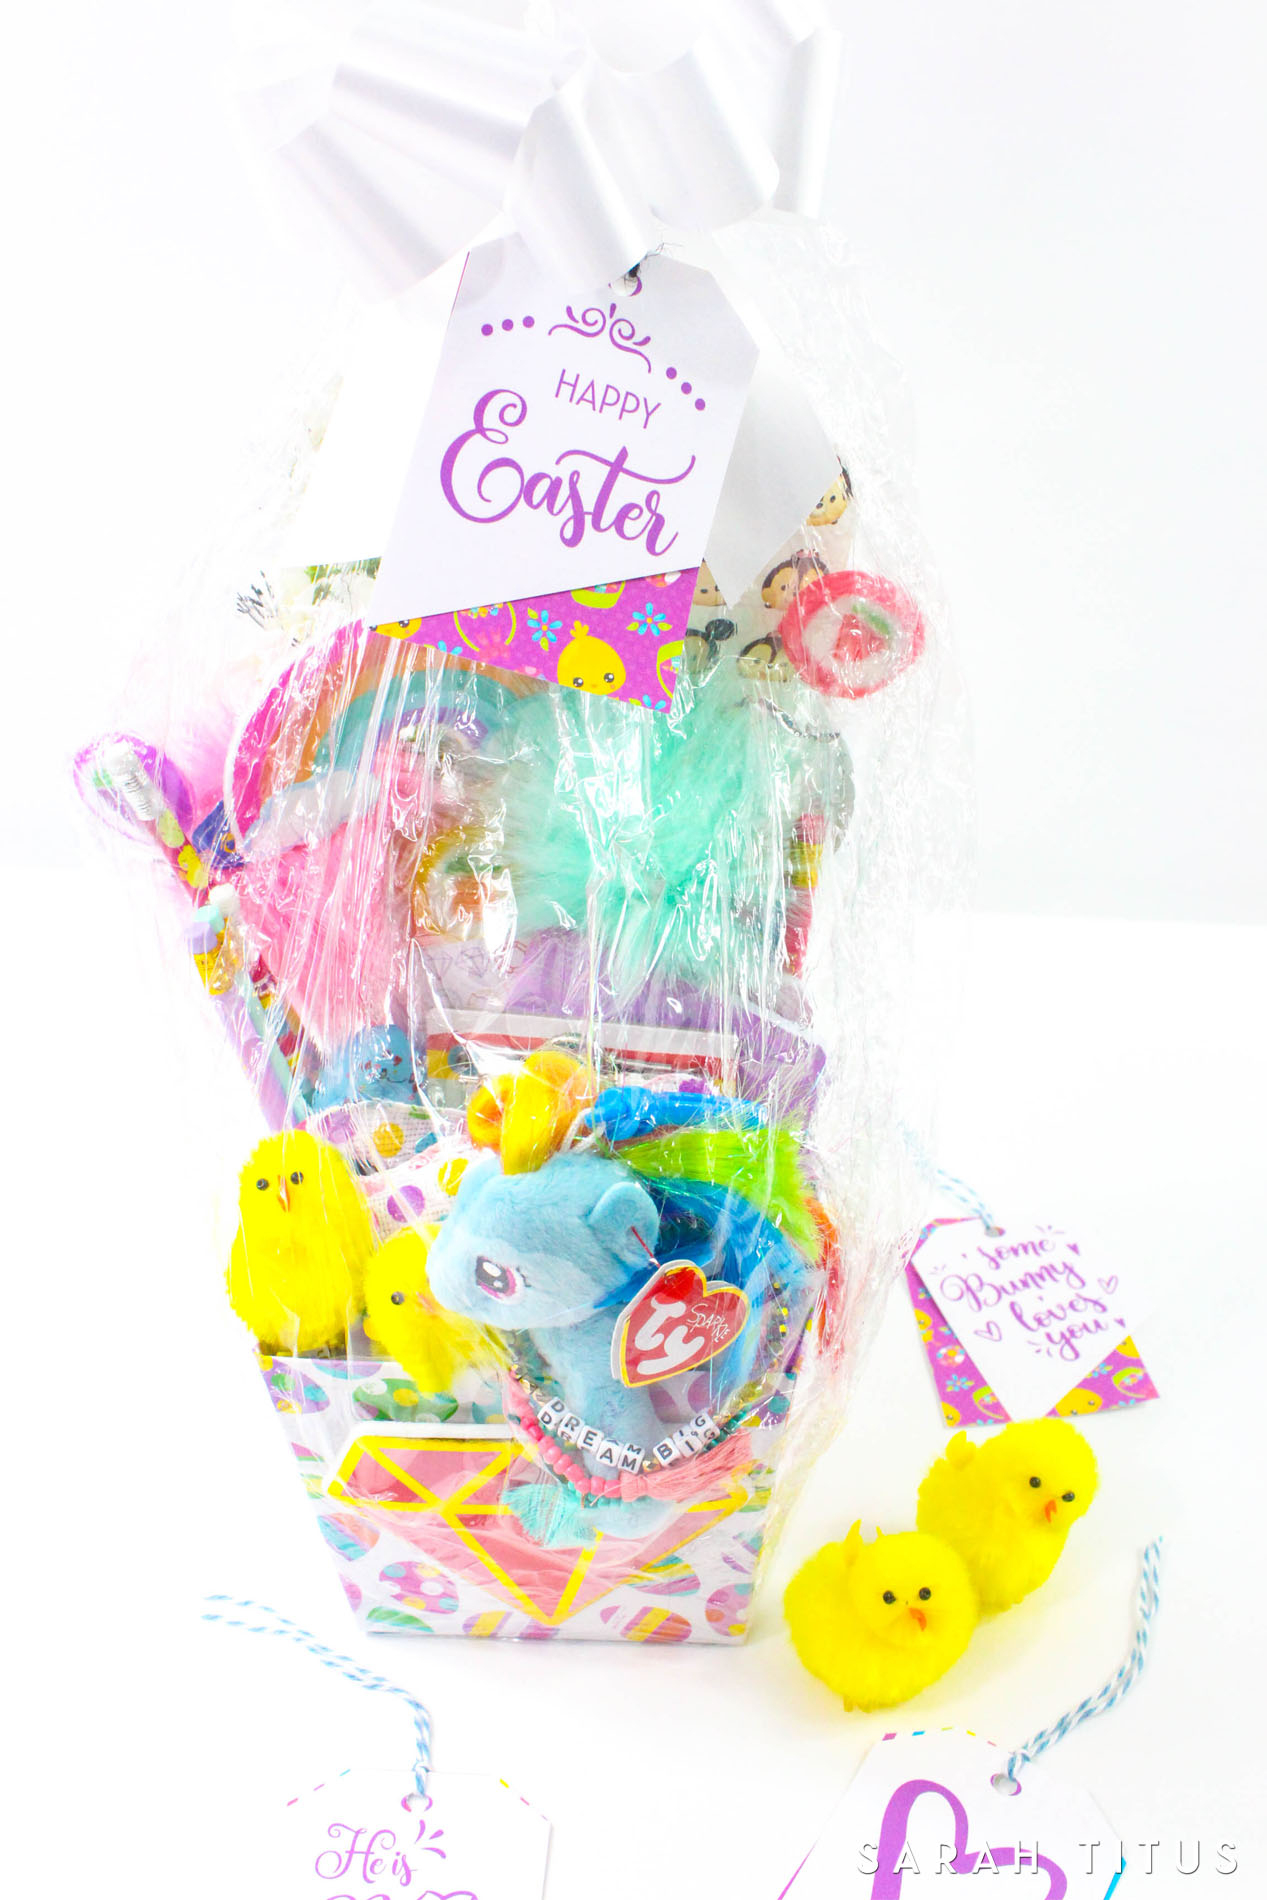 Free Printable Easter Gift Tags - Sarah Titus - Free Printable Easter Basket Name Tags